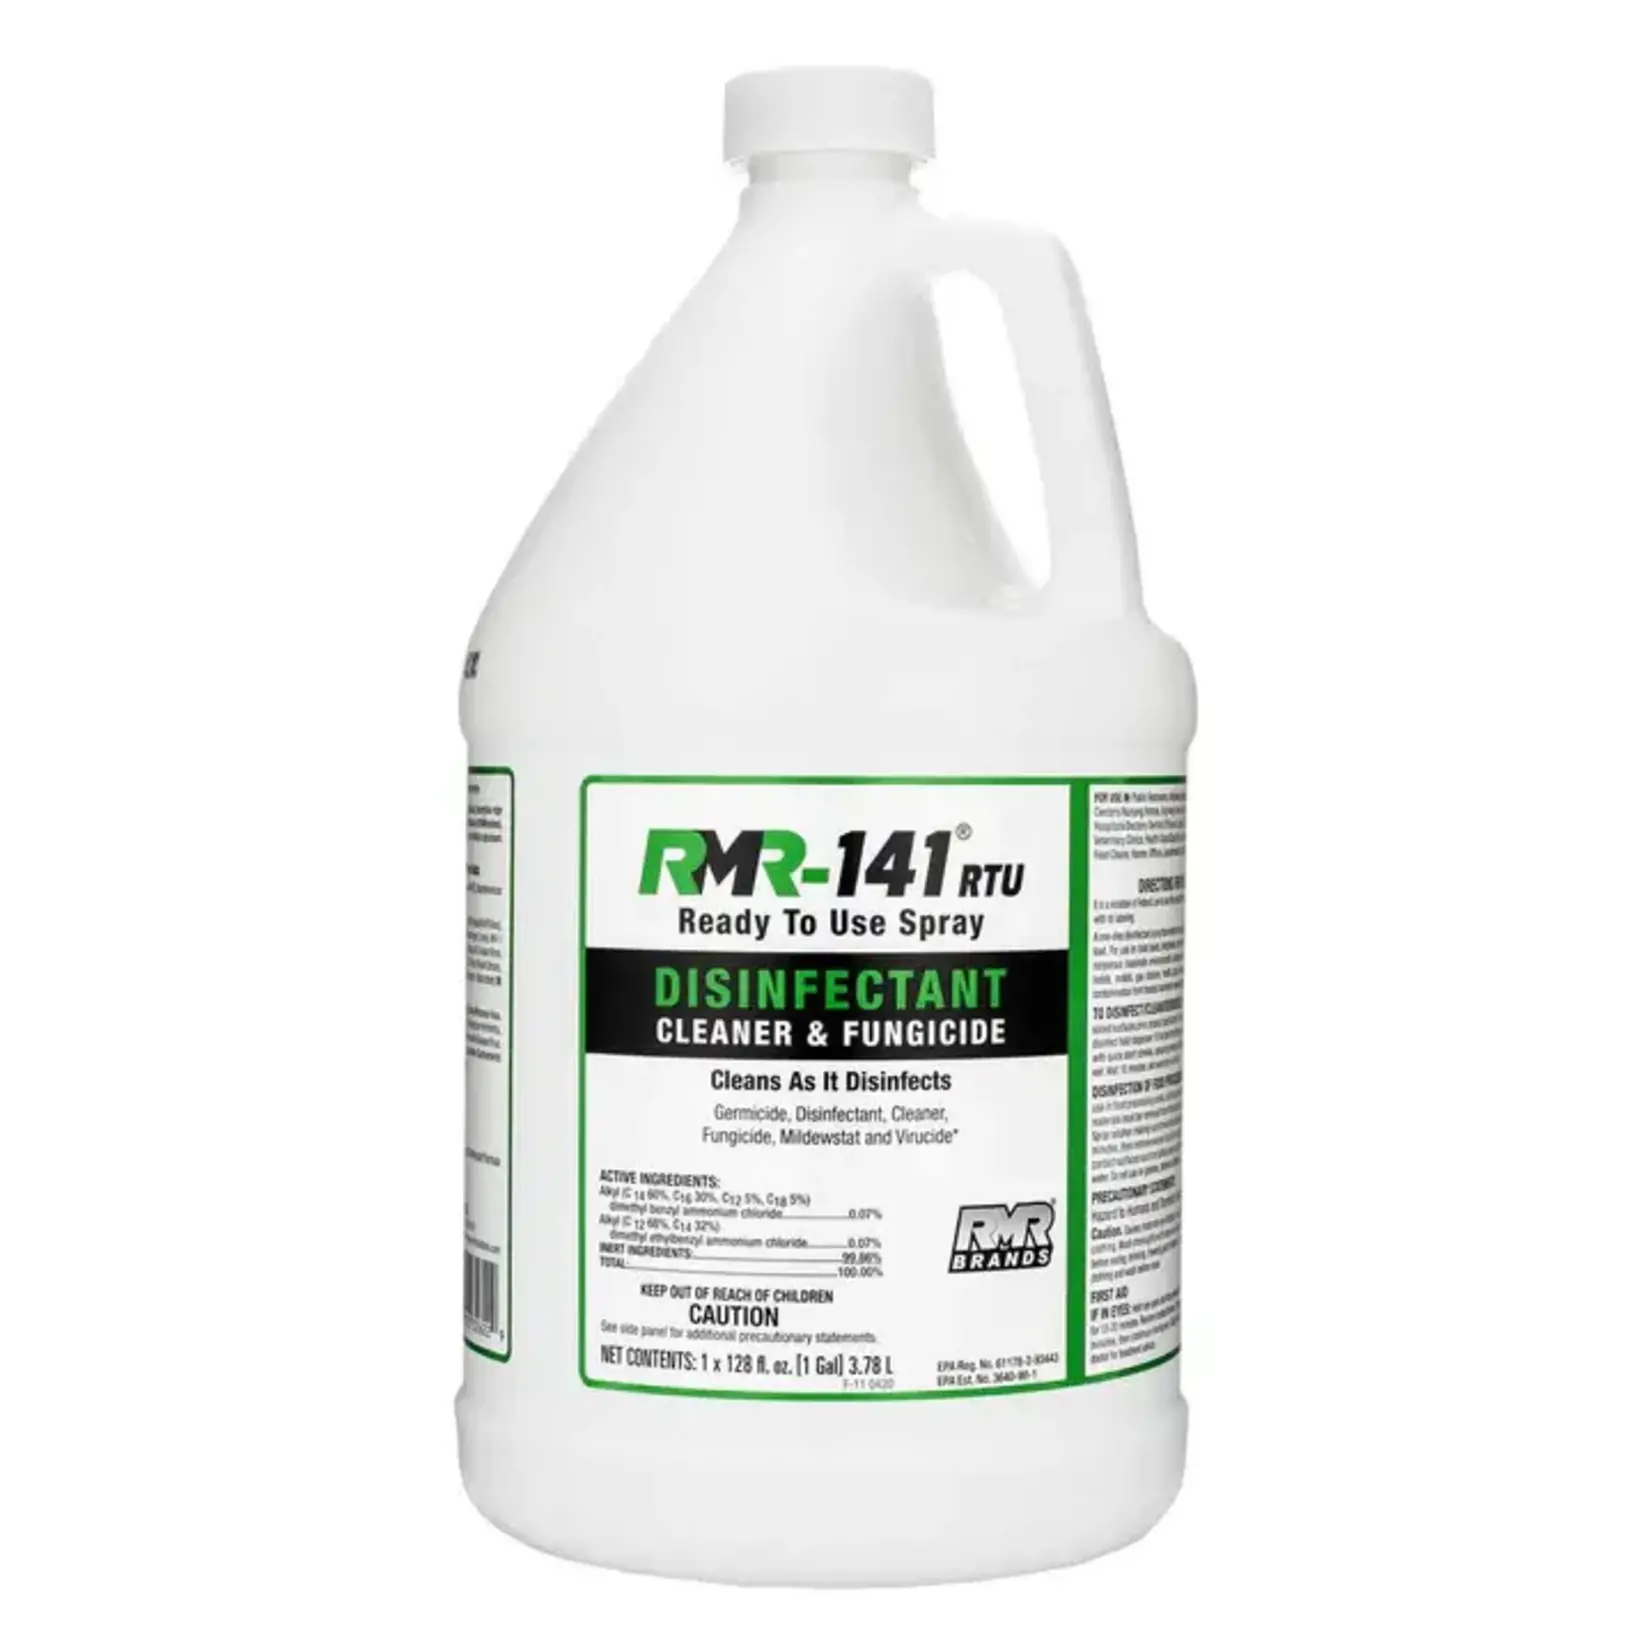 RMR-141 RTU Disinfectant, Fungicide & Cleaner - 1 Gal.